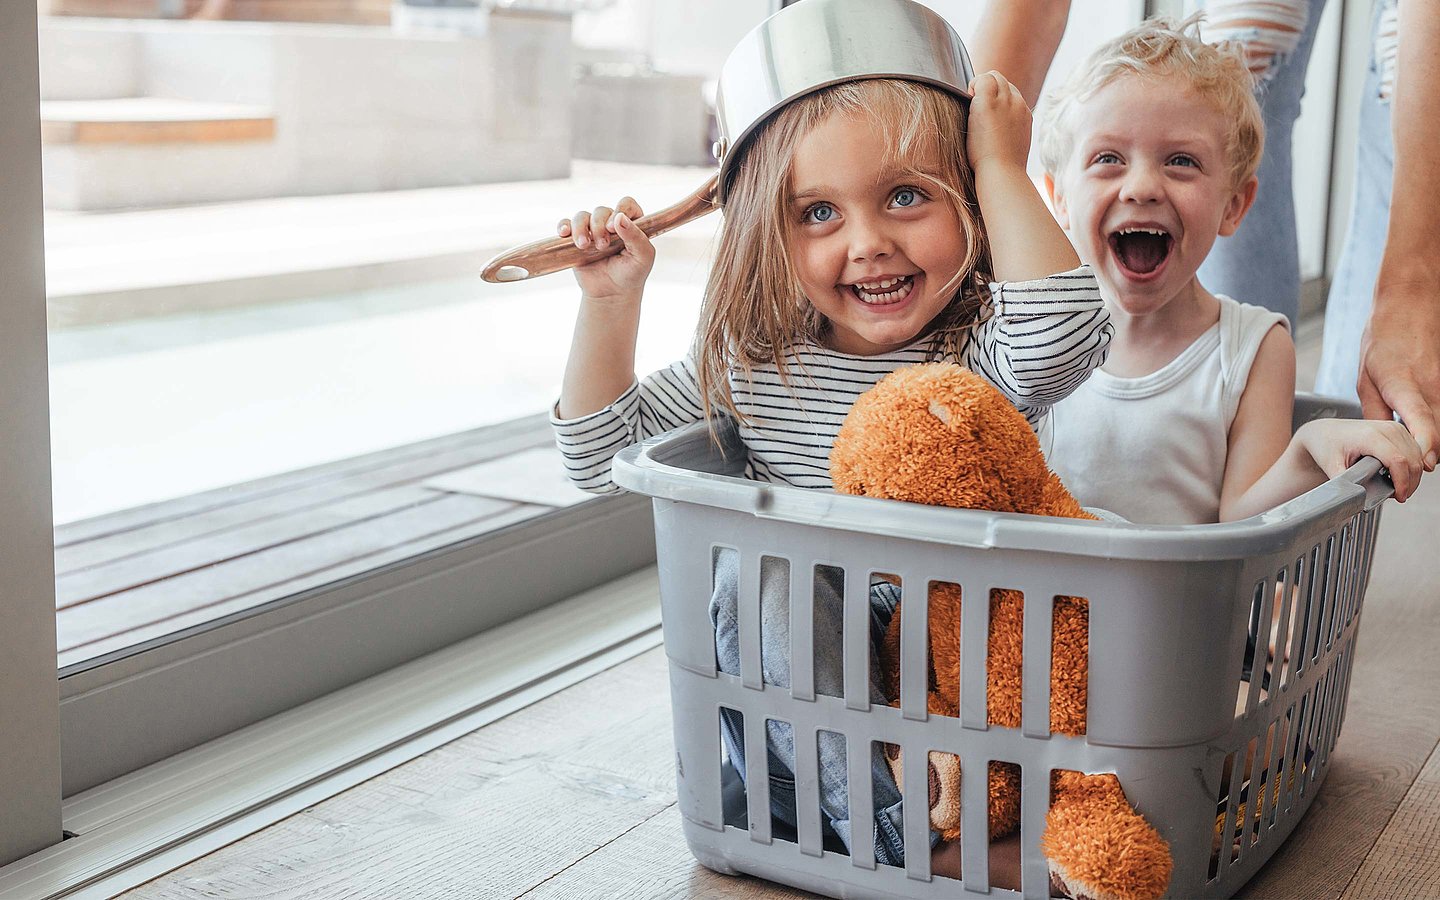 Zwei Kinder spielen in einem Wäschekorb